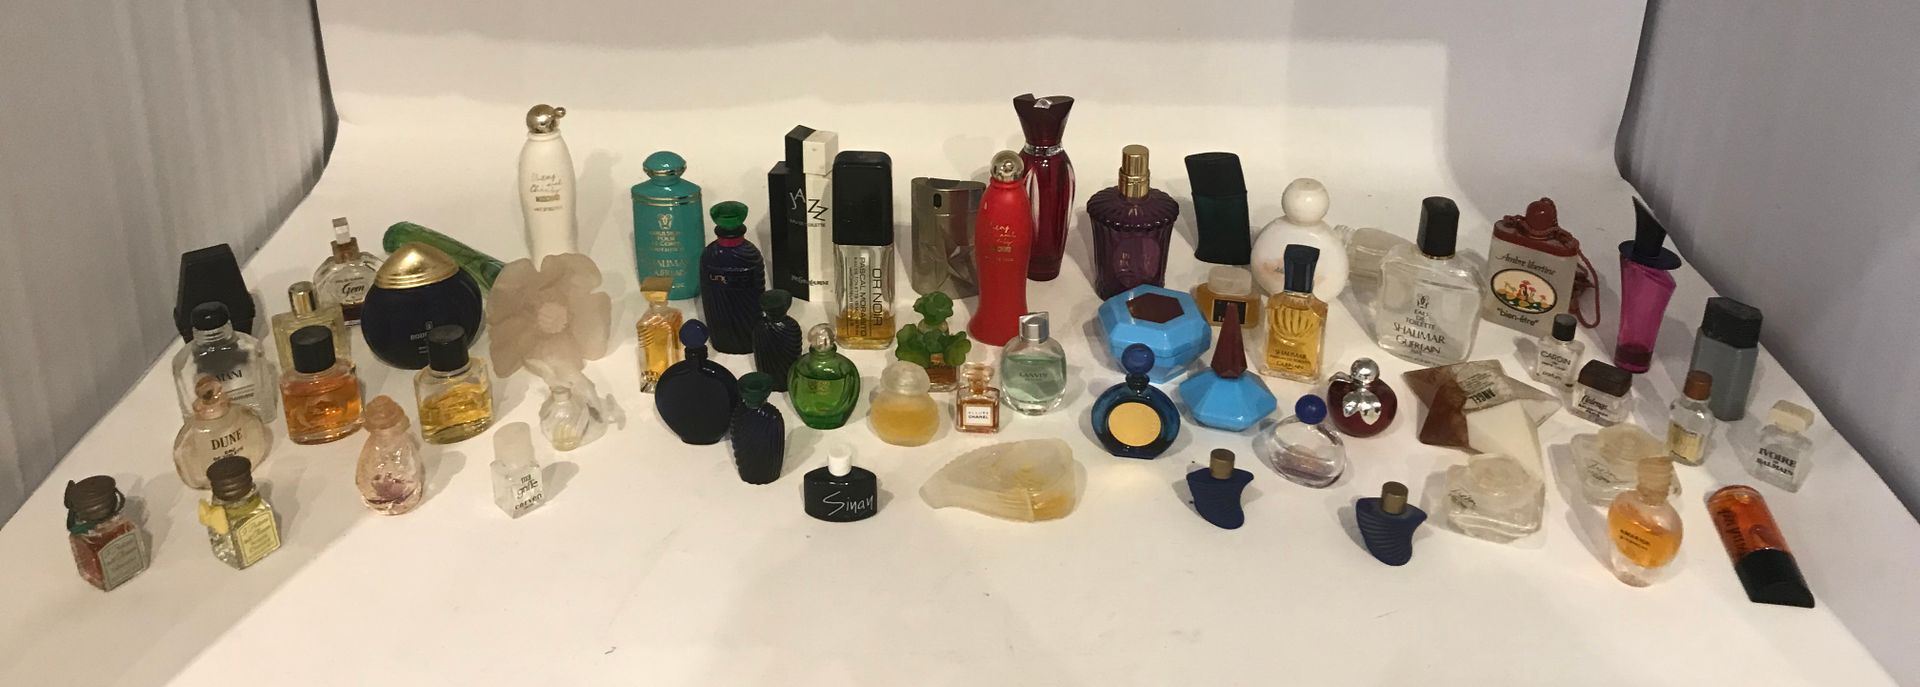 Null 一批不同品牌的微型香水（59个）。

附上一套空的微型盒子。